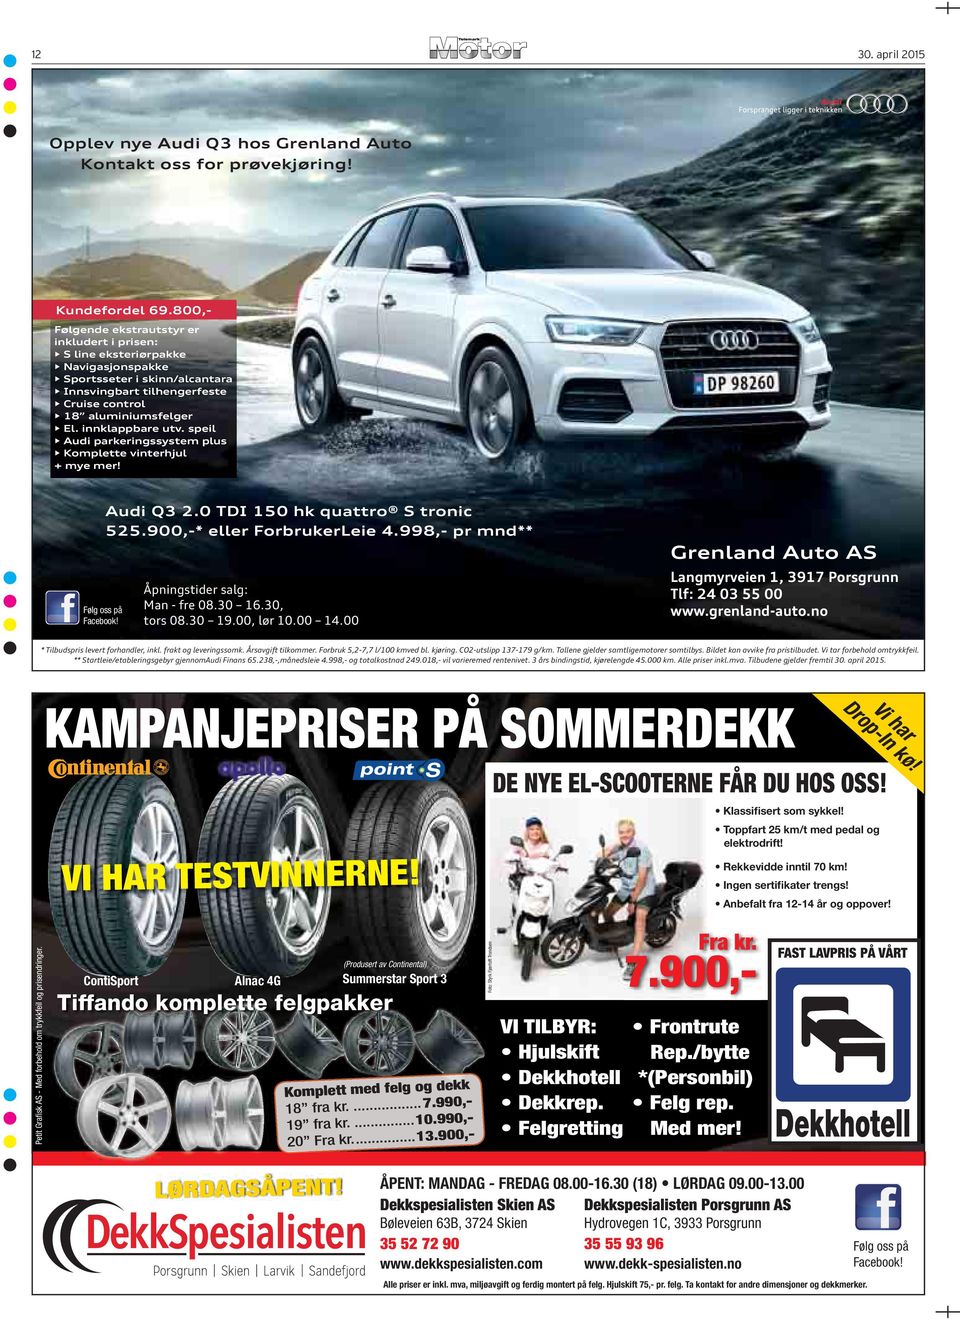 innklappbare utv. speil Audi parkeringssystem plus Komplette vinterhjul + mye mer! Følg oss på Facebook! Audi Q3 2.0 TDI 150 hk quattro S tronic 525.900,-* eller ForbrukerLeie 4.